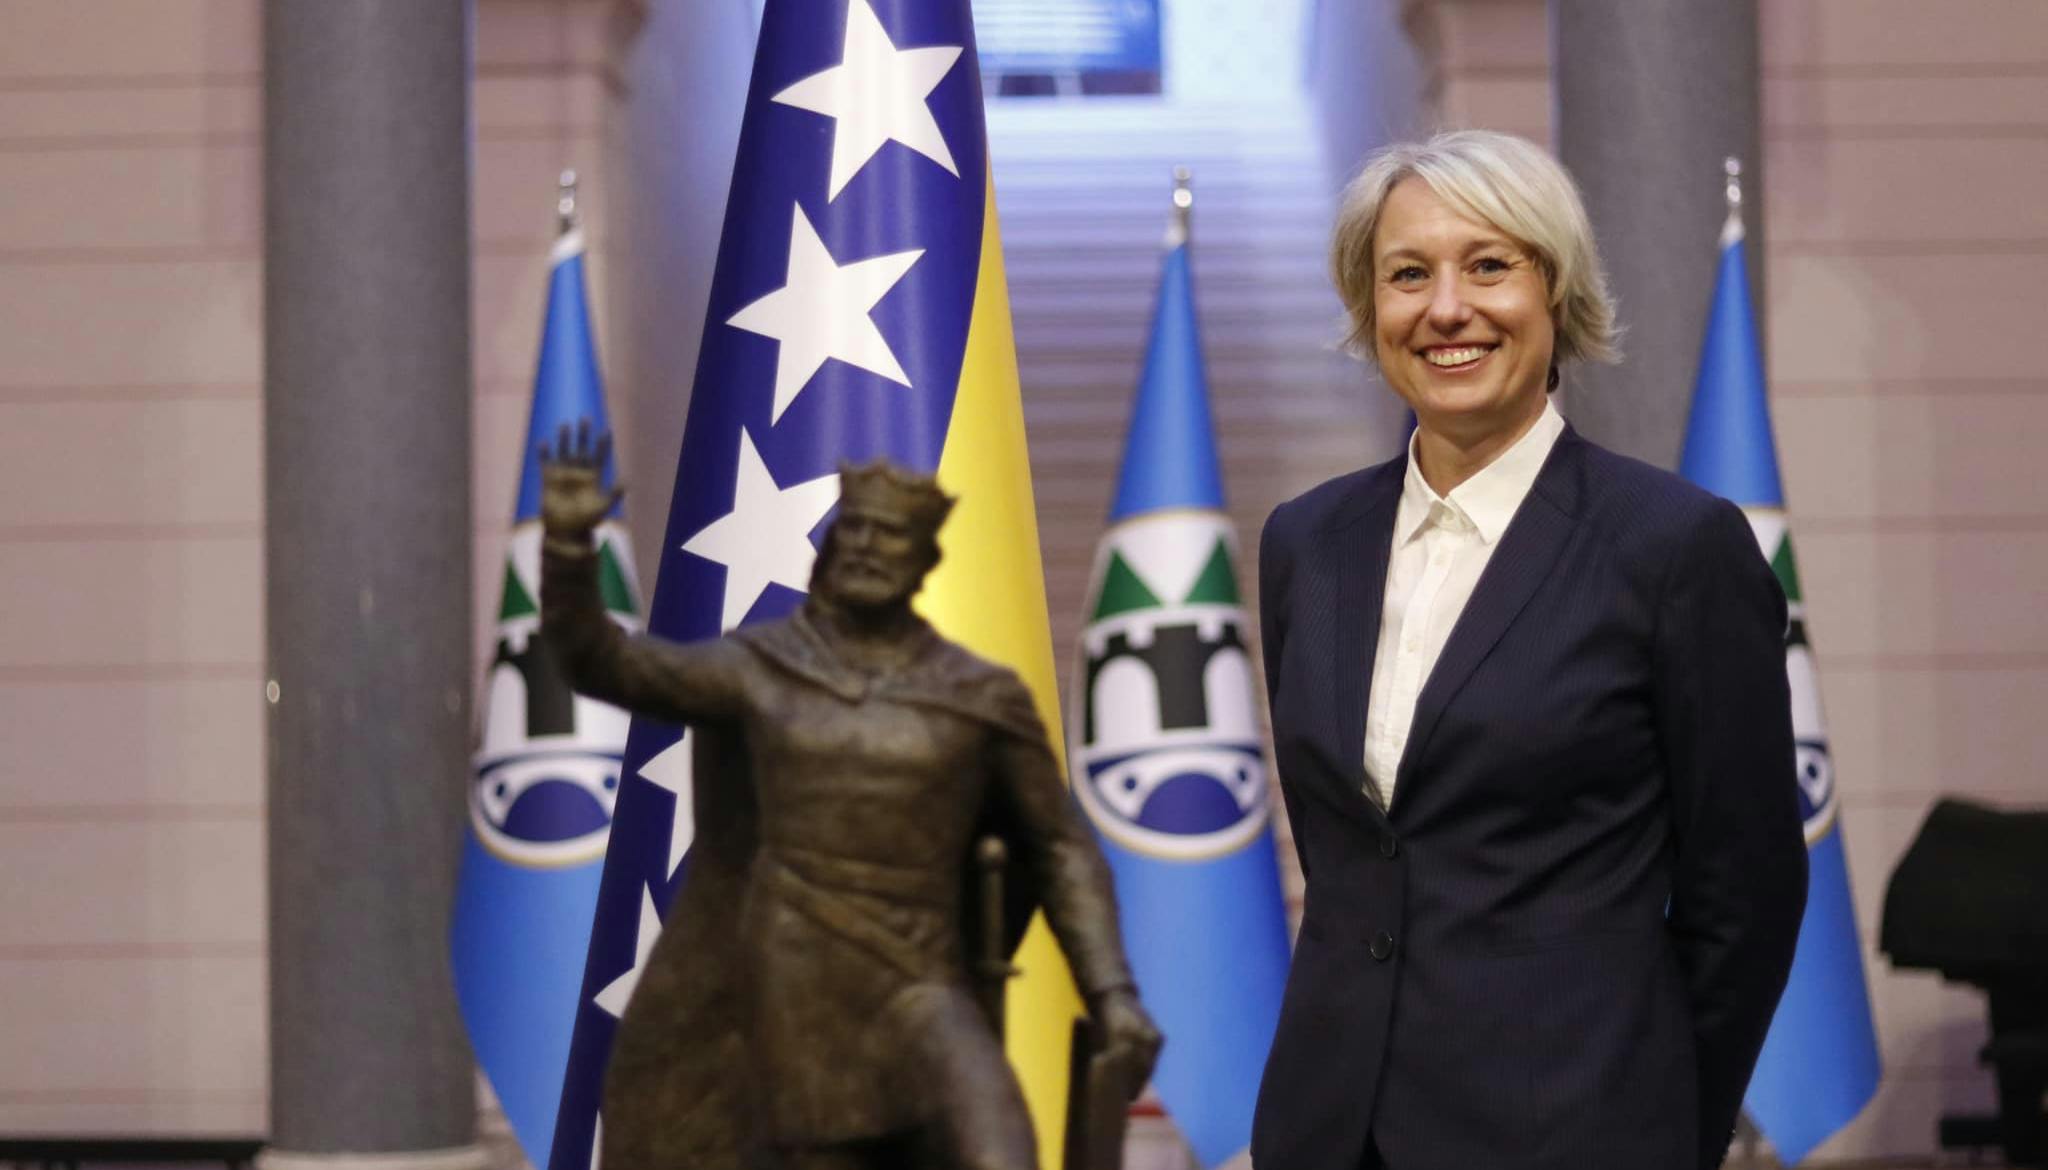 In primo piano sulla sinistra, Anja Margetić, vicesindaca di Sarajevo in abiti istituzionali e sullo sfondo le bandiere della città di Sarajevo.